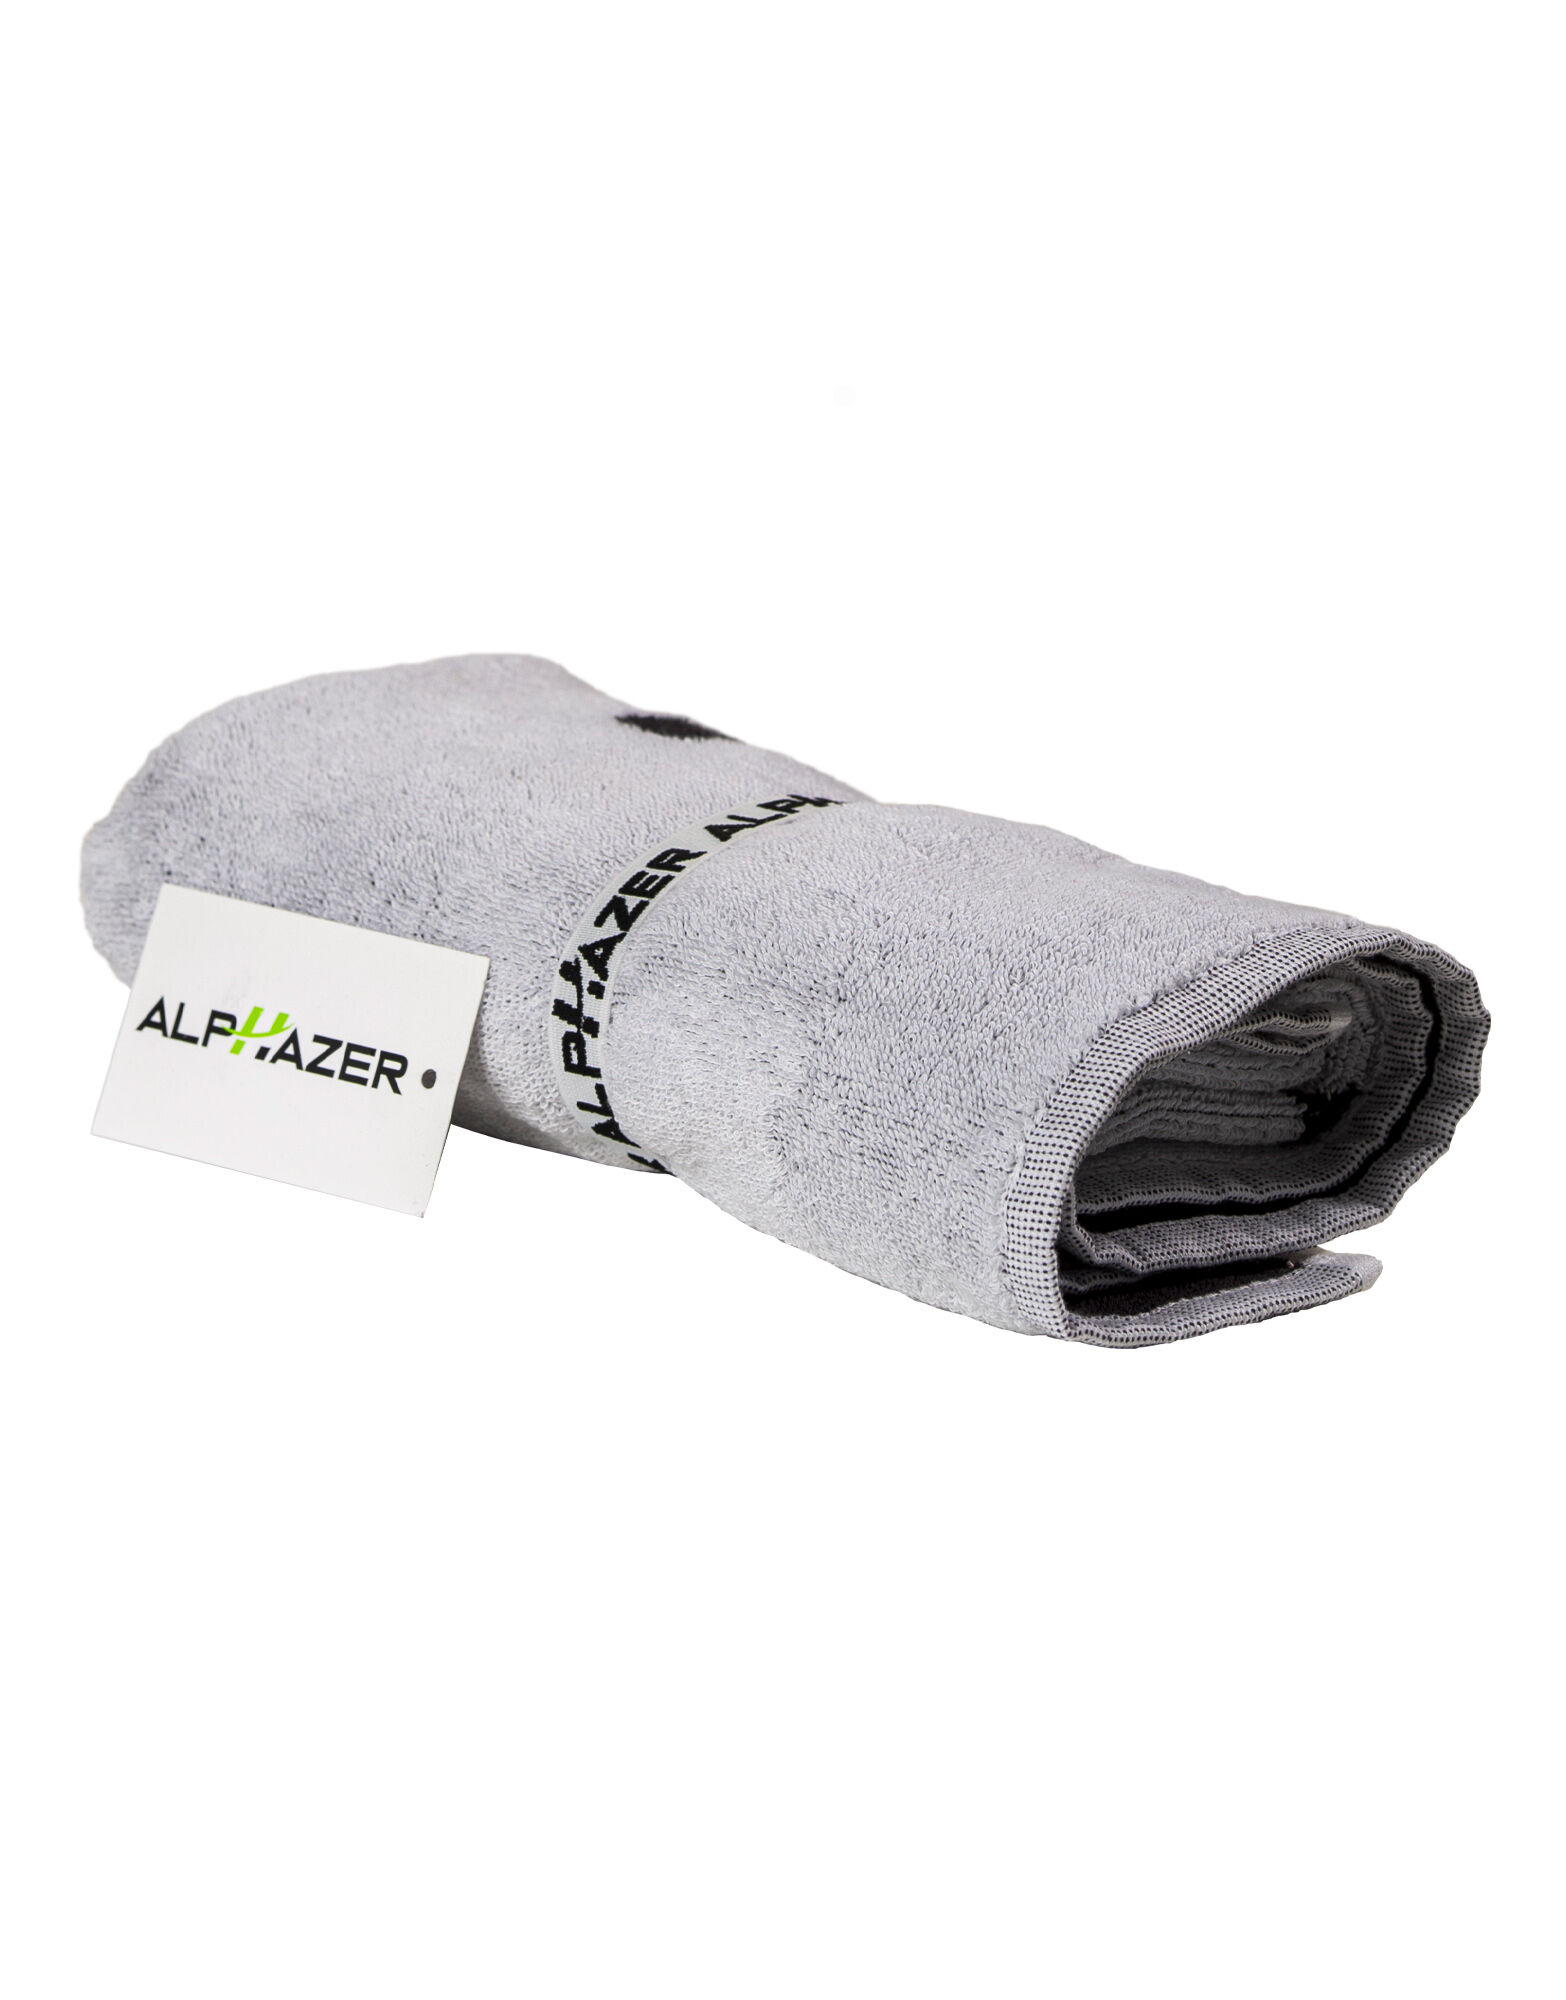 ALPHAZER OUTFIT Towel Cm 50x100 T/f 500 Gsm Colore: Bianco